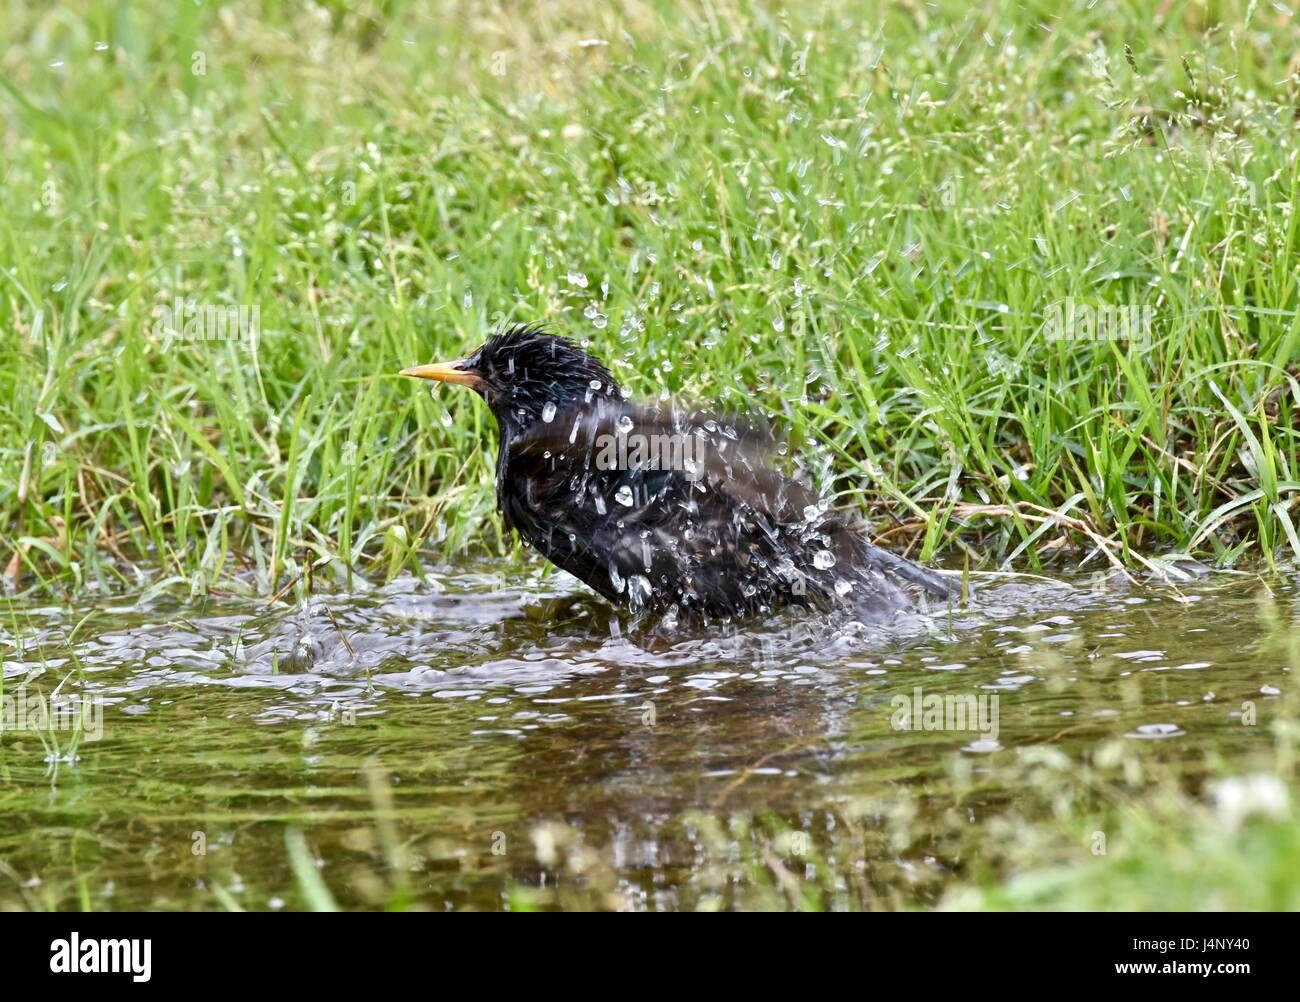 Unione starling (Sturnus vulgaris) la balneazione in una piccola pozza d'acqua Foto Stock